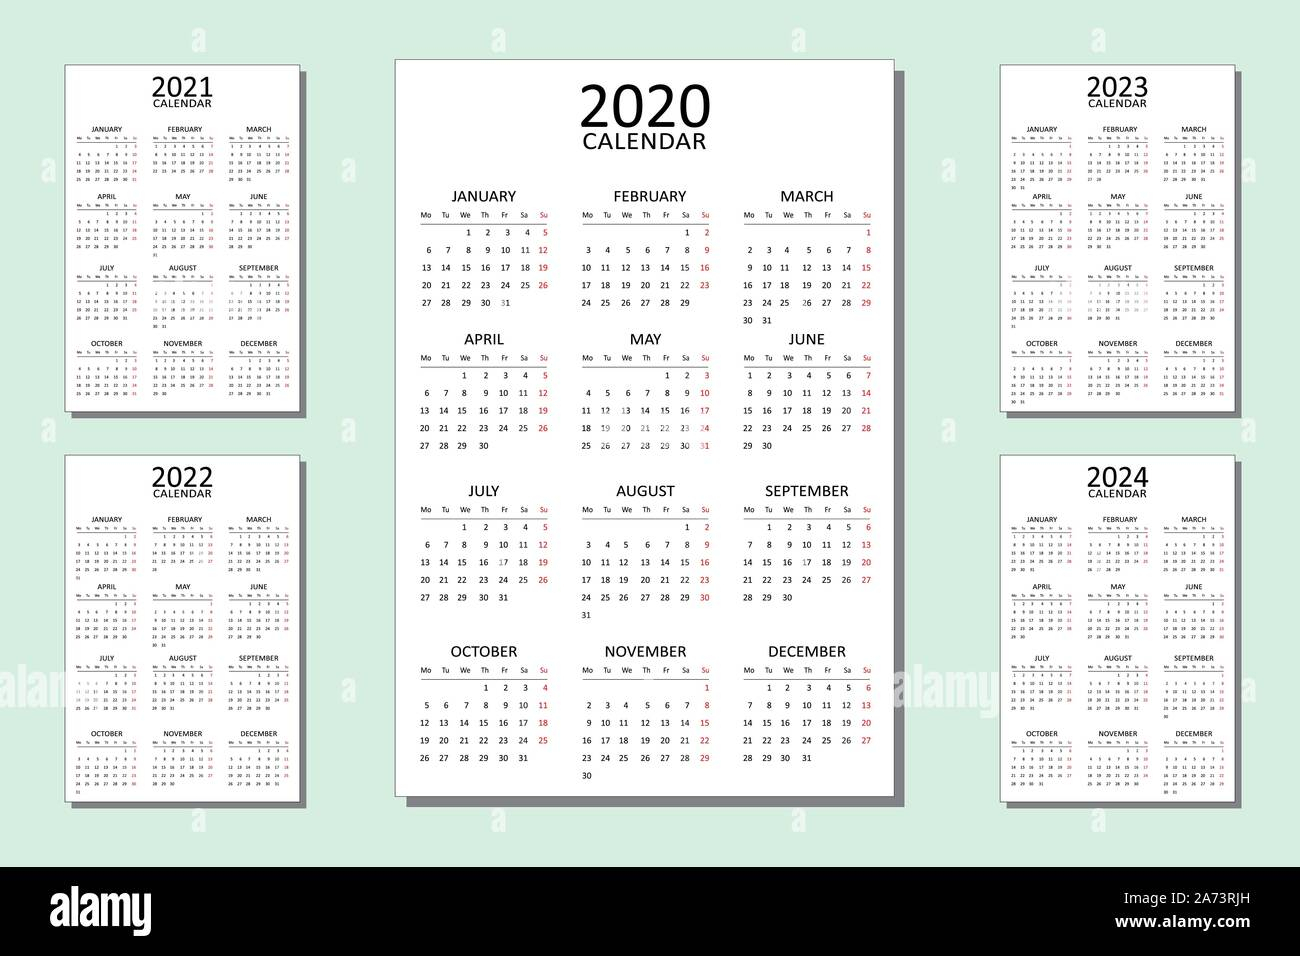 Ssc Calendar 2022